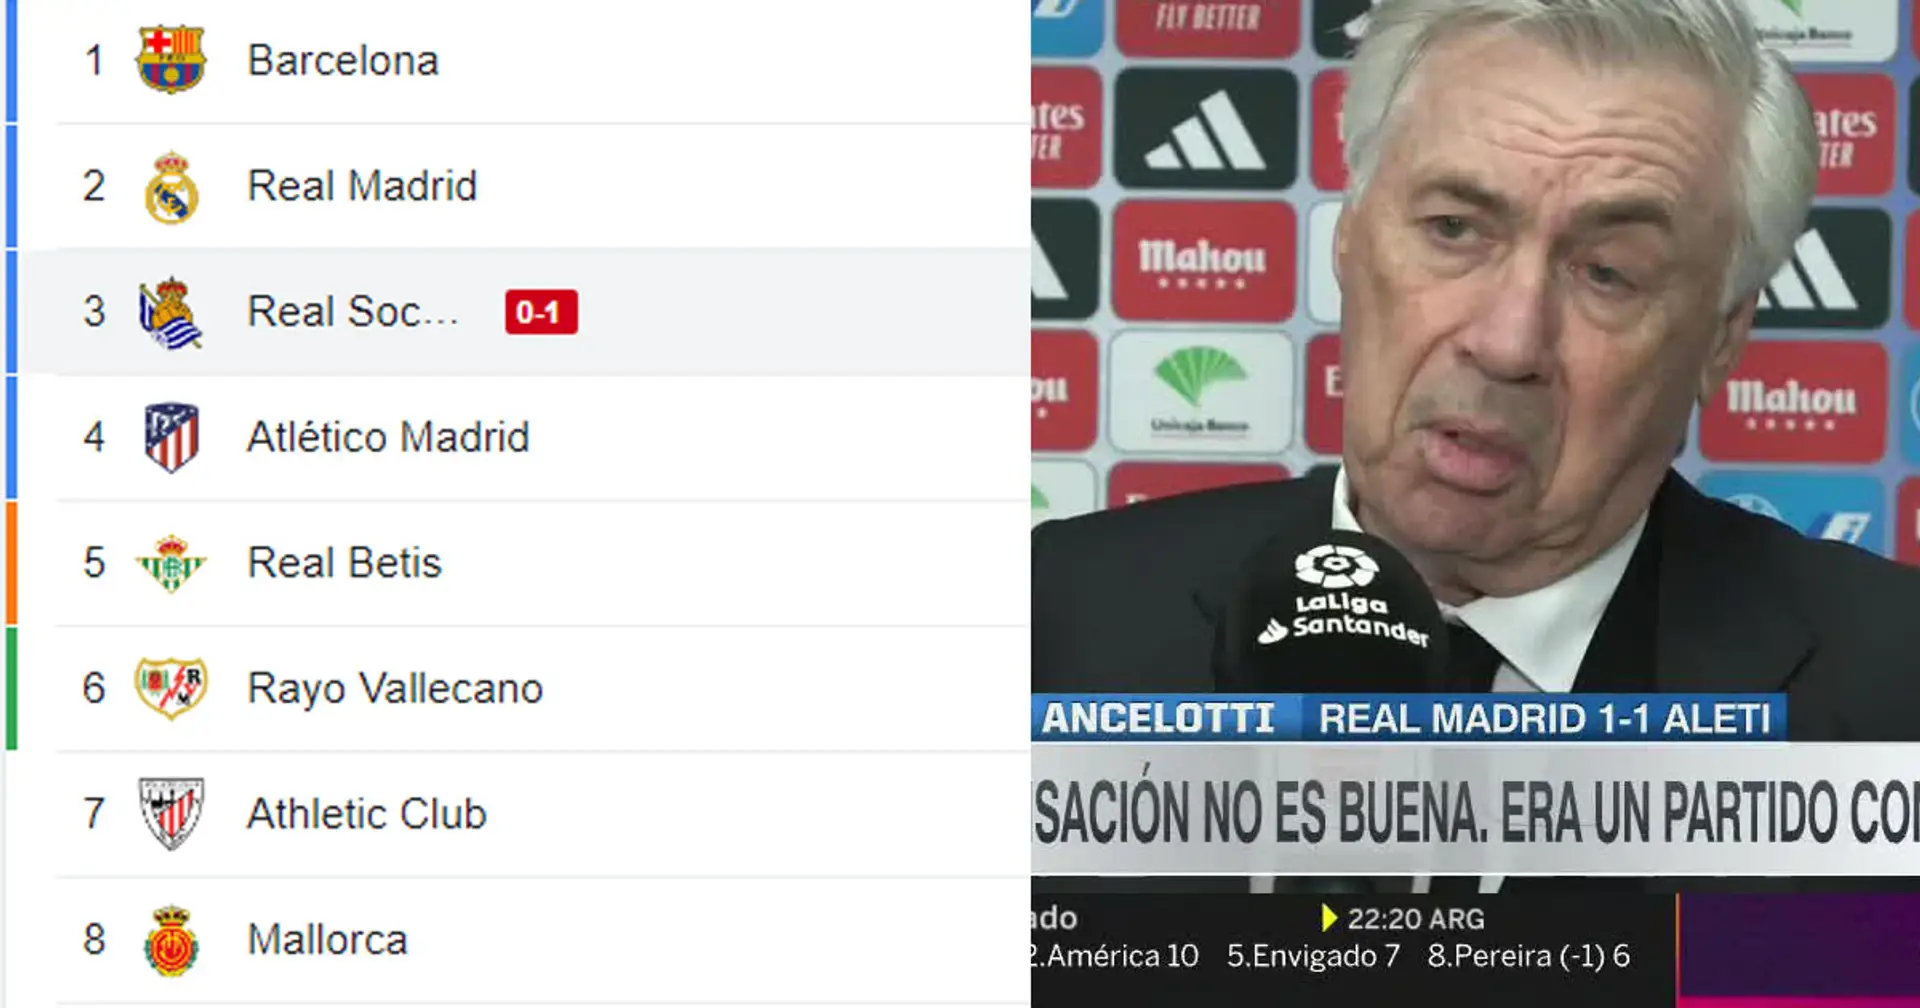 "Nous ne disons pas au revoir": Ancelotti insiste sur le fait que le Real Madrid est toujours dans la course au titre malgré le revers contre l'Atletico